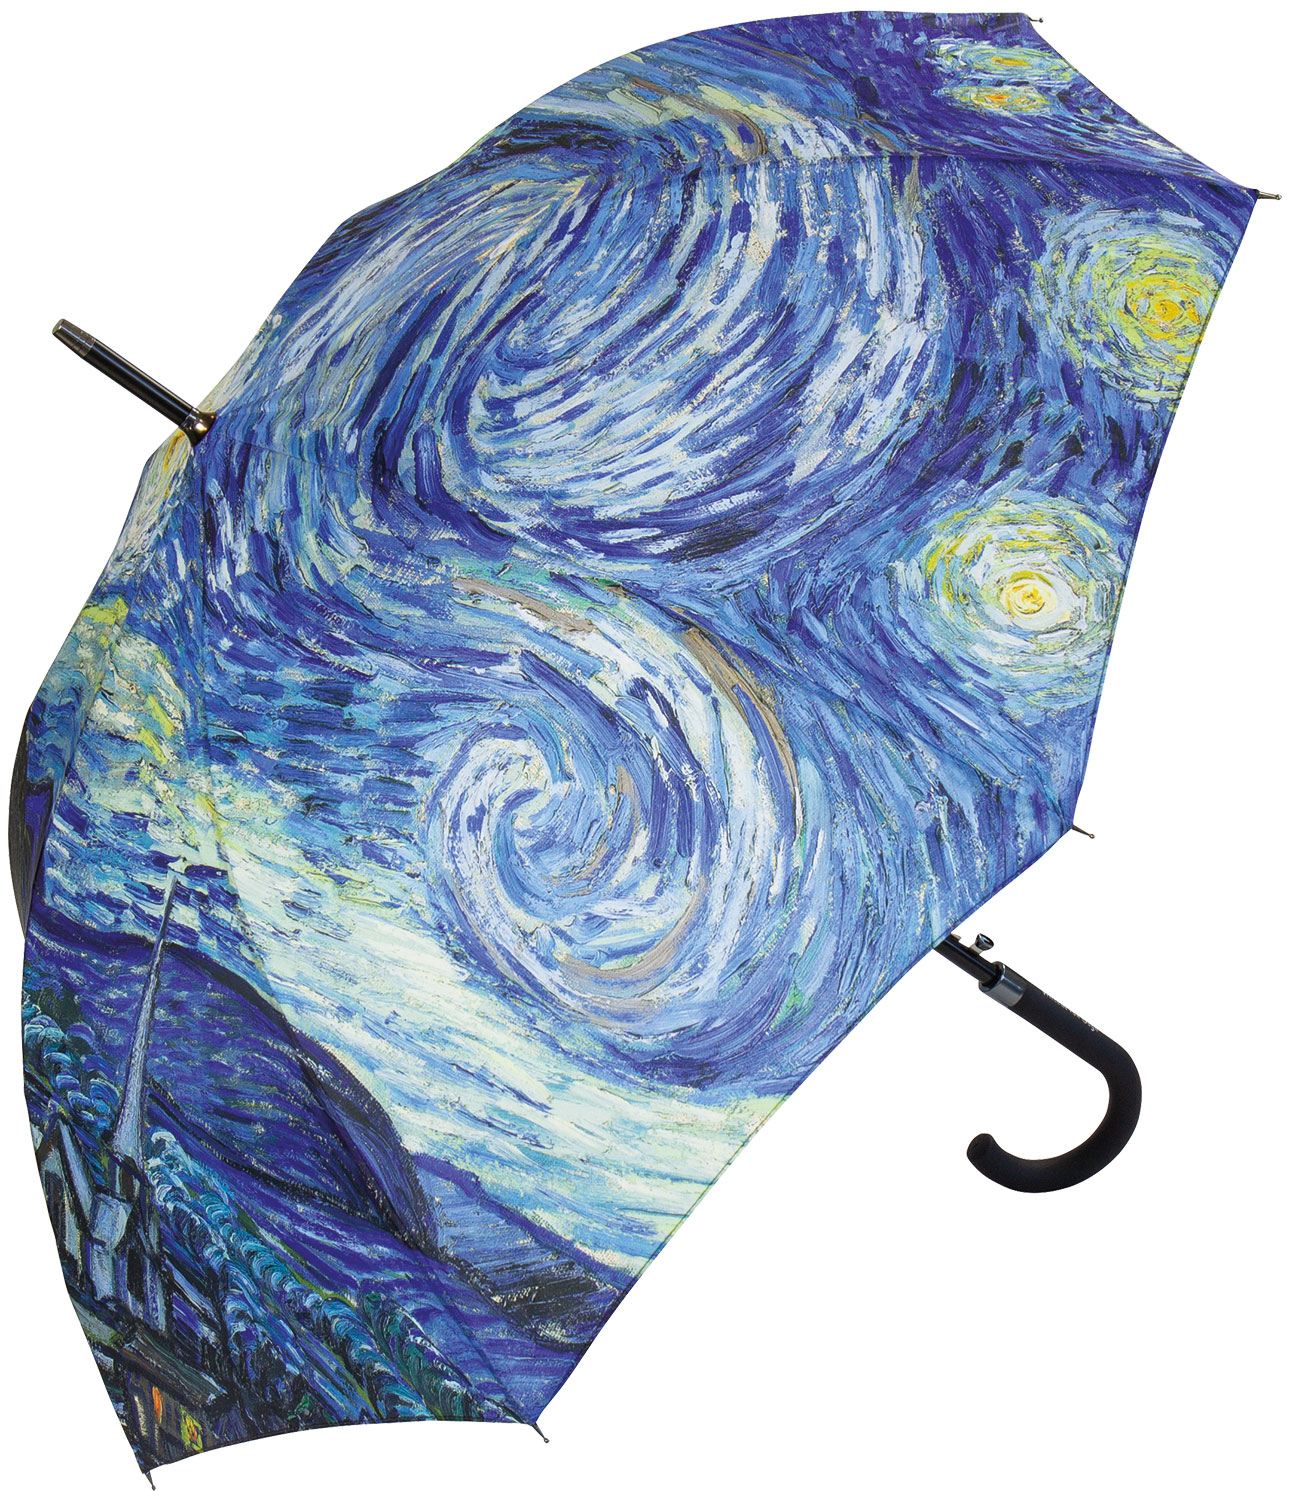 Stockschirm "Sternennacht" von Vincent van Gogh